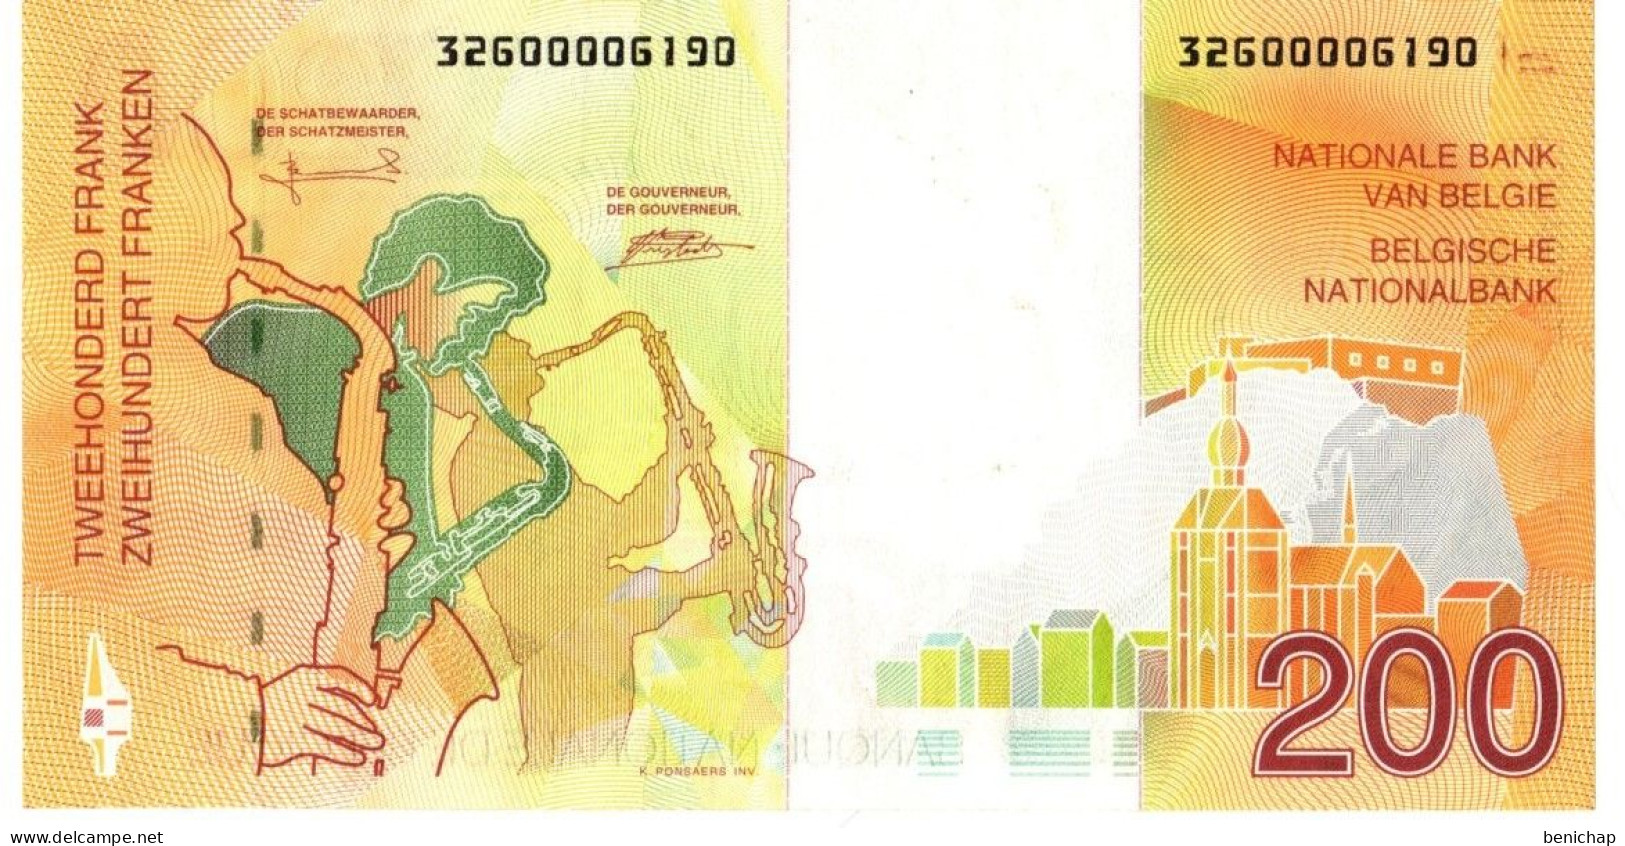 UNC P.148 - 200 Francs Frank Adophe Sax-Saxophone - Belgique Belgïe - 1995 - Ce Billet Est Neuf ! - Verzamelingen